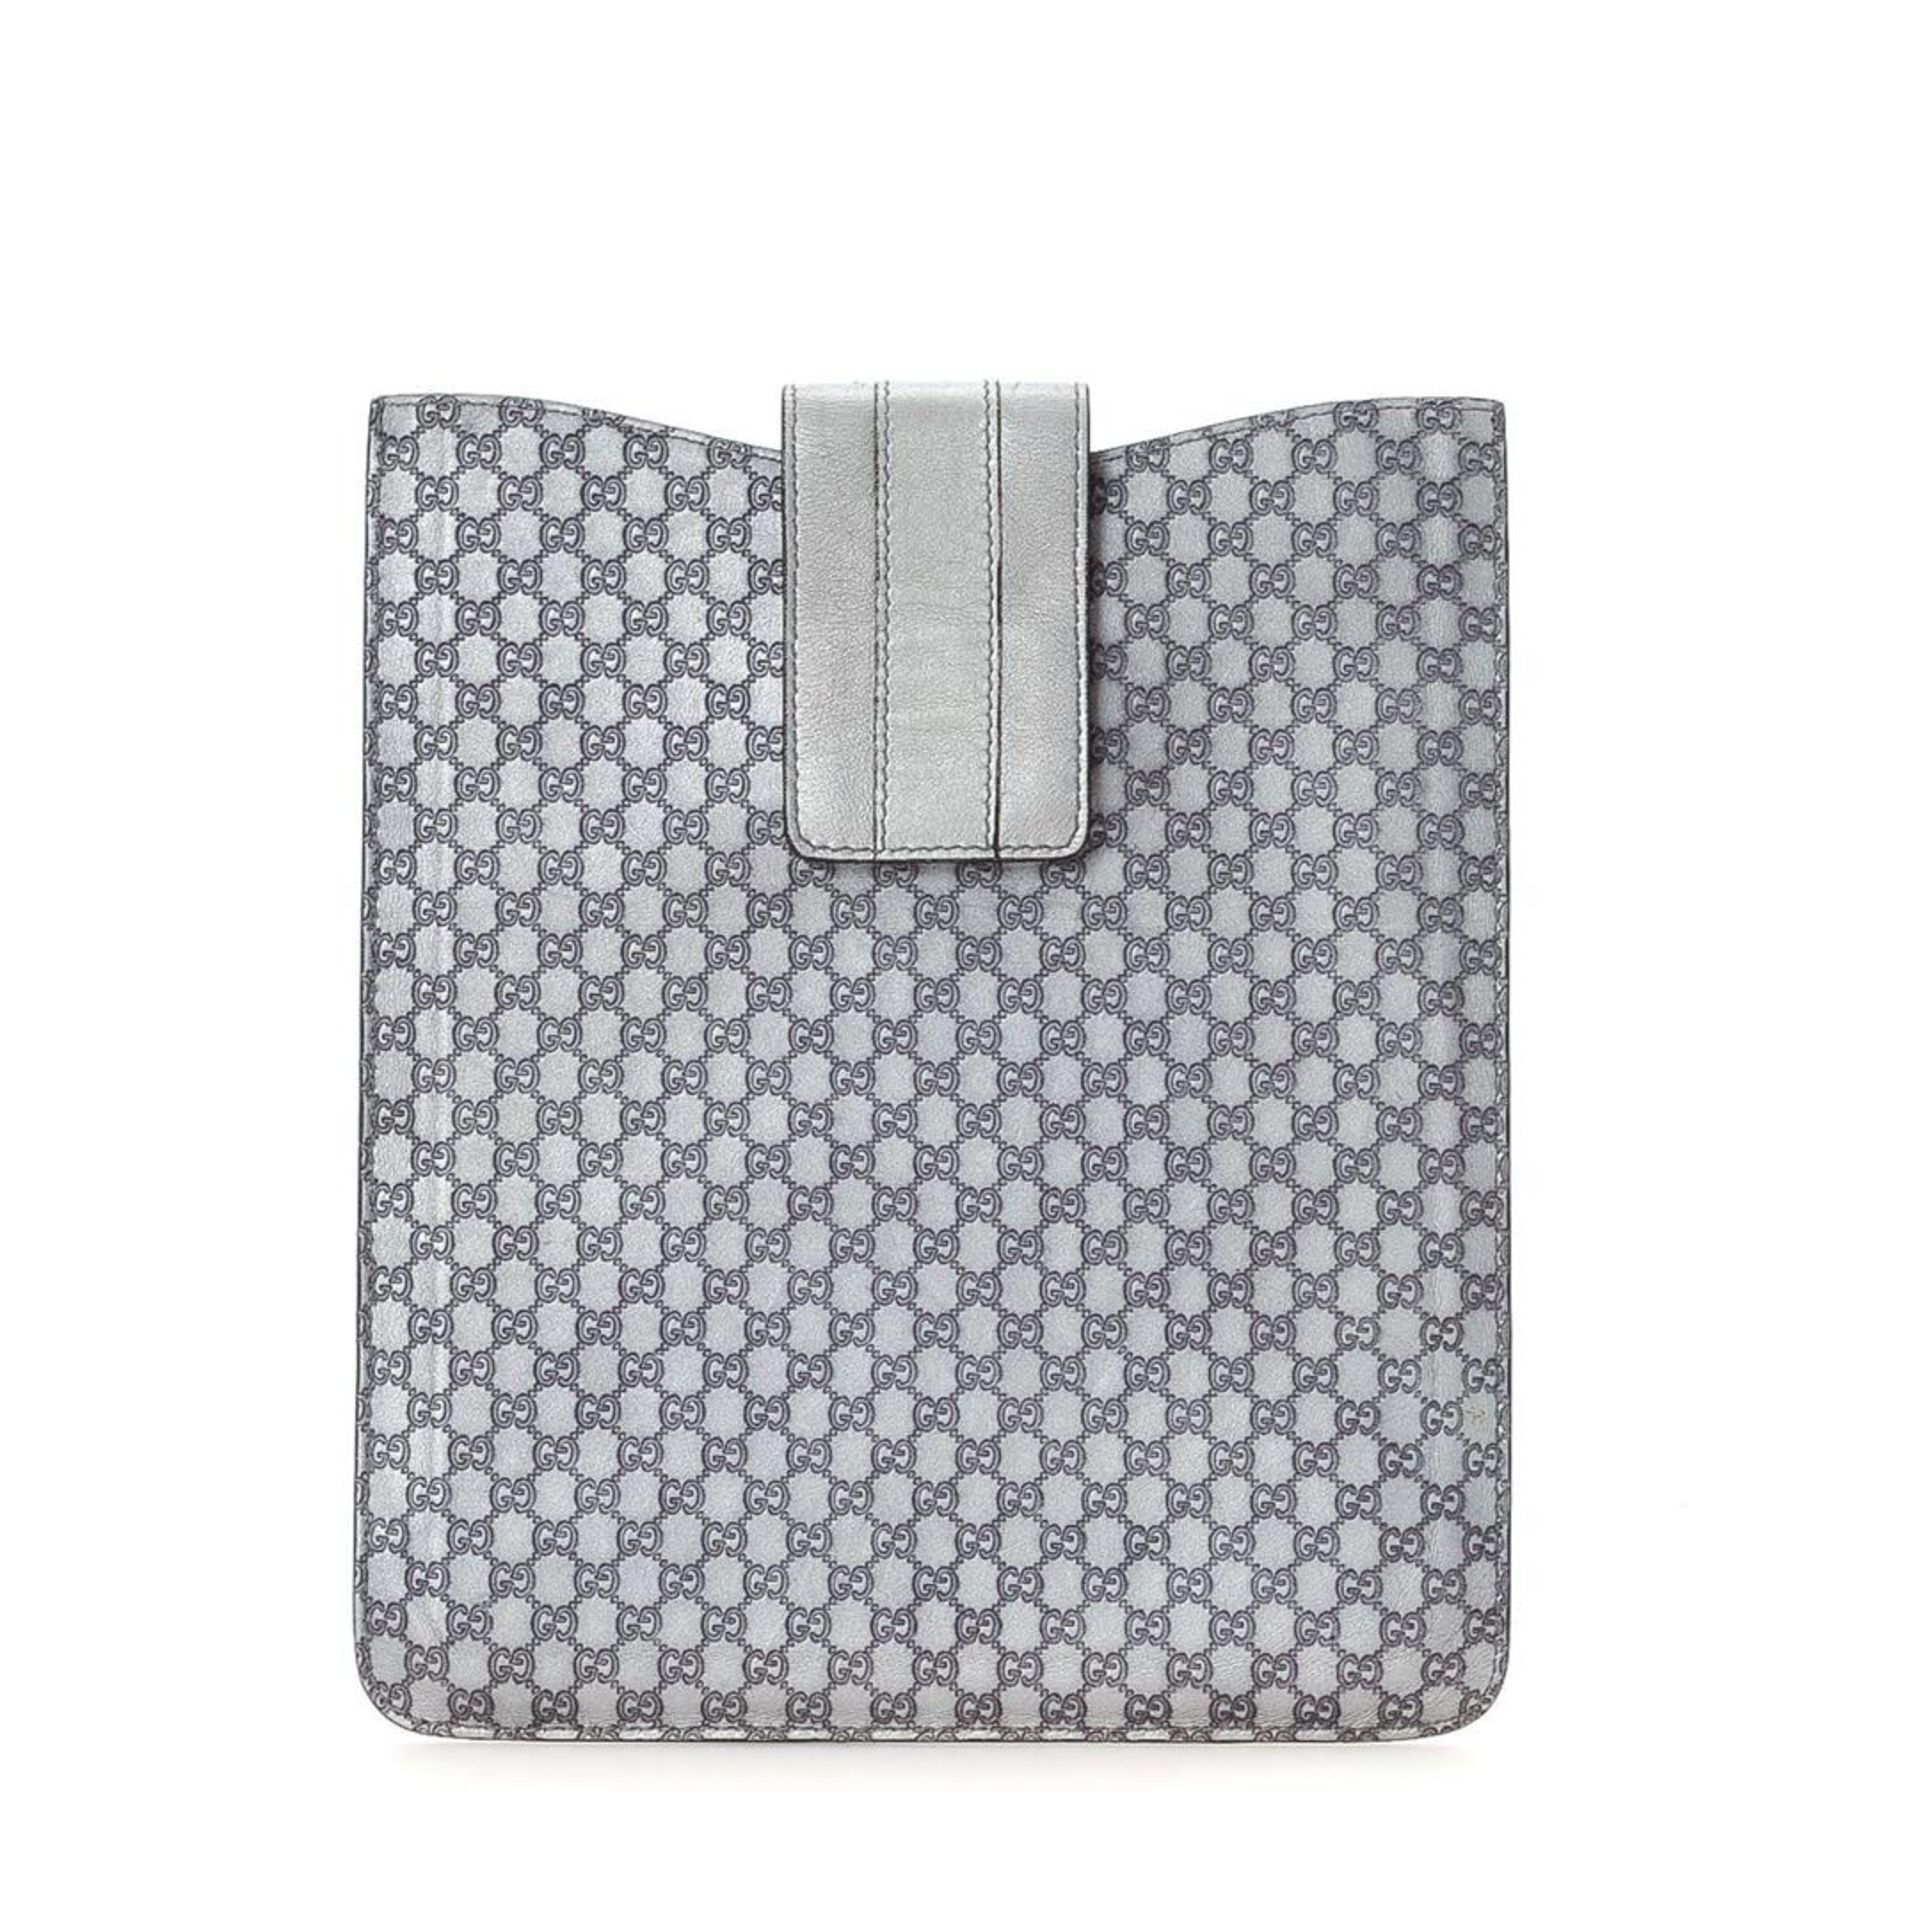 Gucci Silver Leather Microguccissima iPad Case